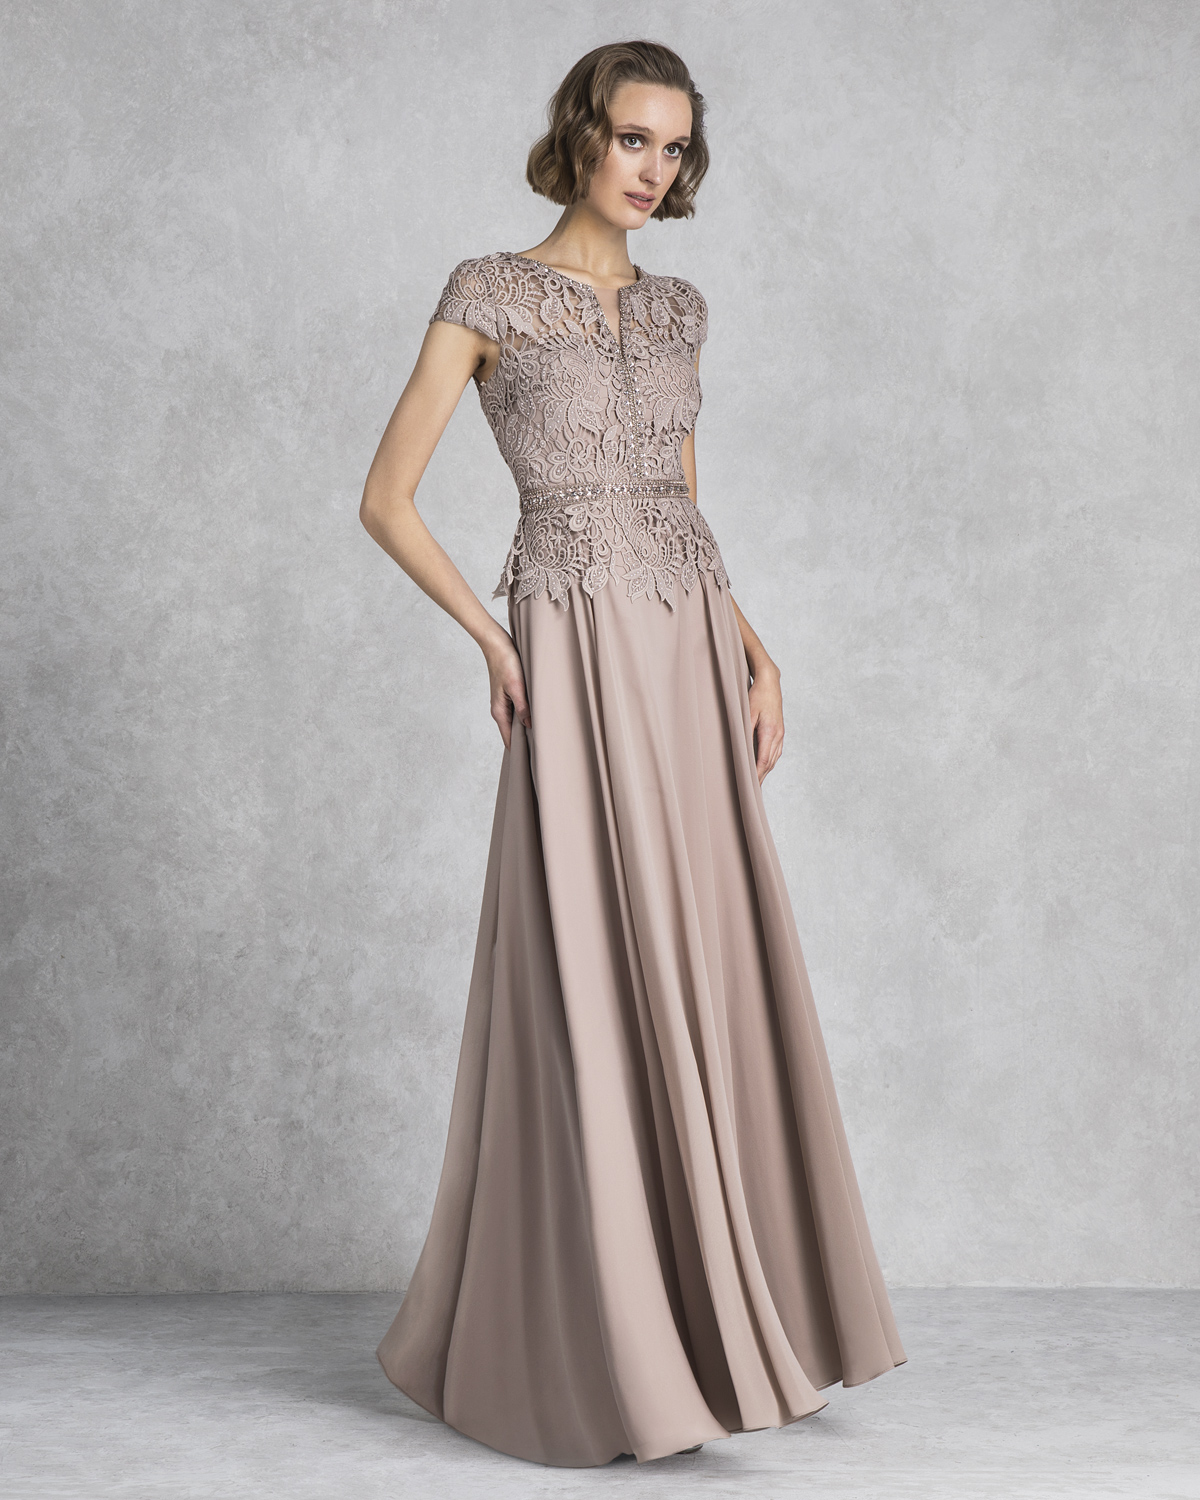 Κλασικά Φορέματα / Κλασικό βραδινό φόρεμα για γάμο με δαντέλενιο μπούστο και σατέν φούστα